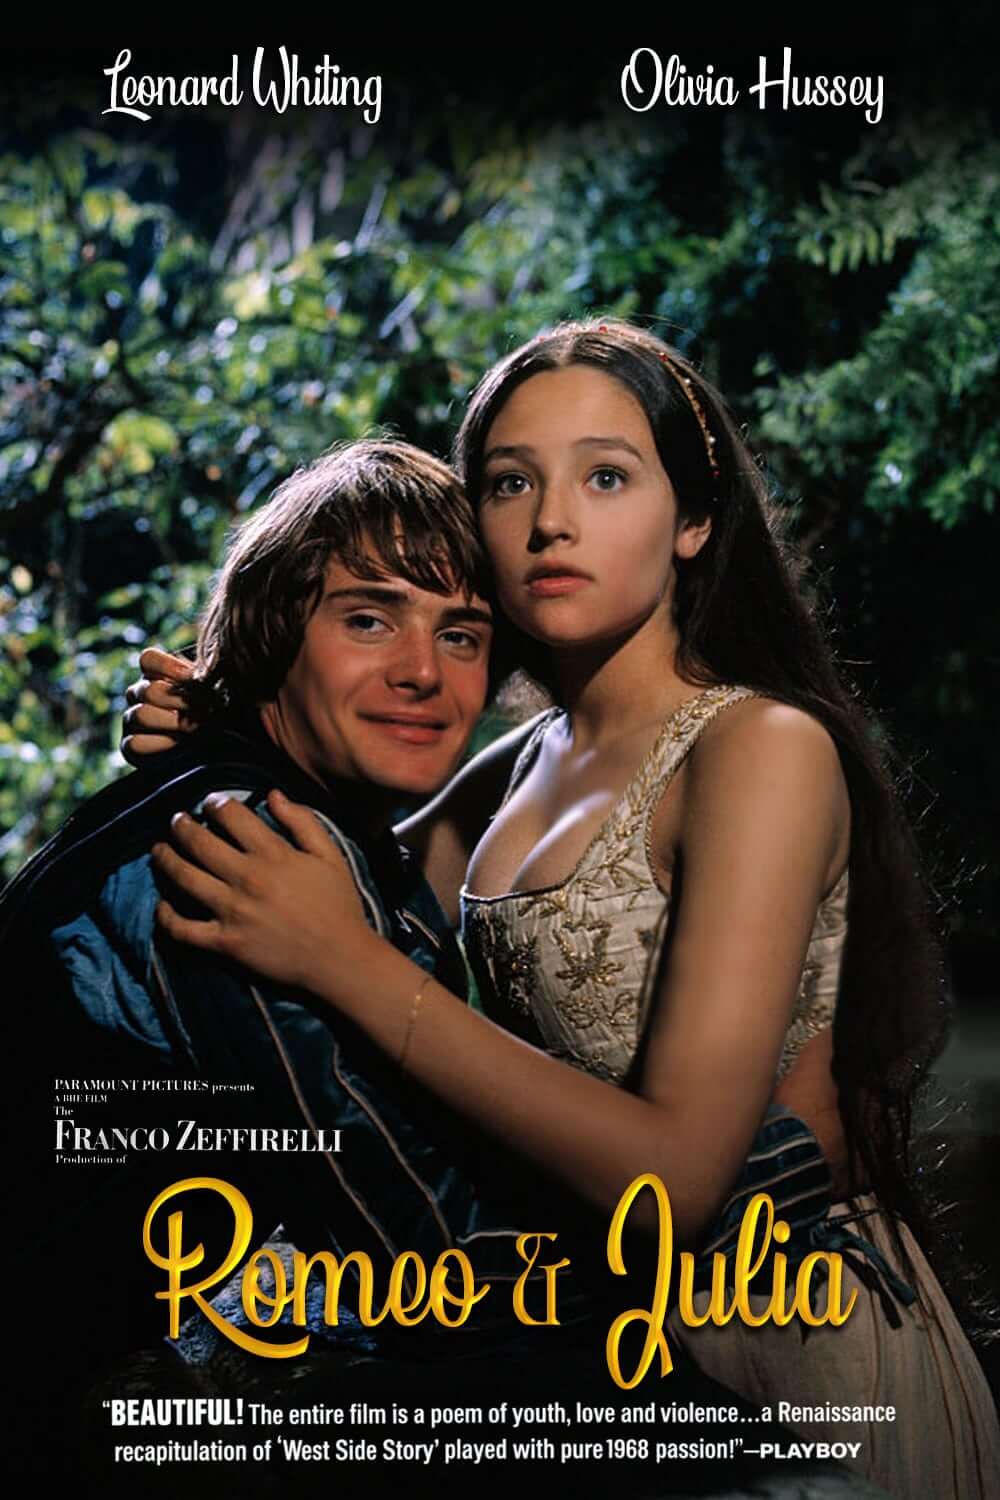 로미오와 줄리엣이 서로 포옹하는 영화 포스터